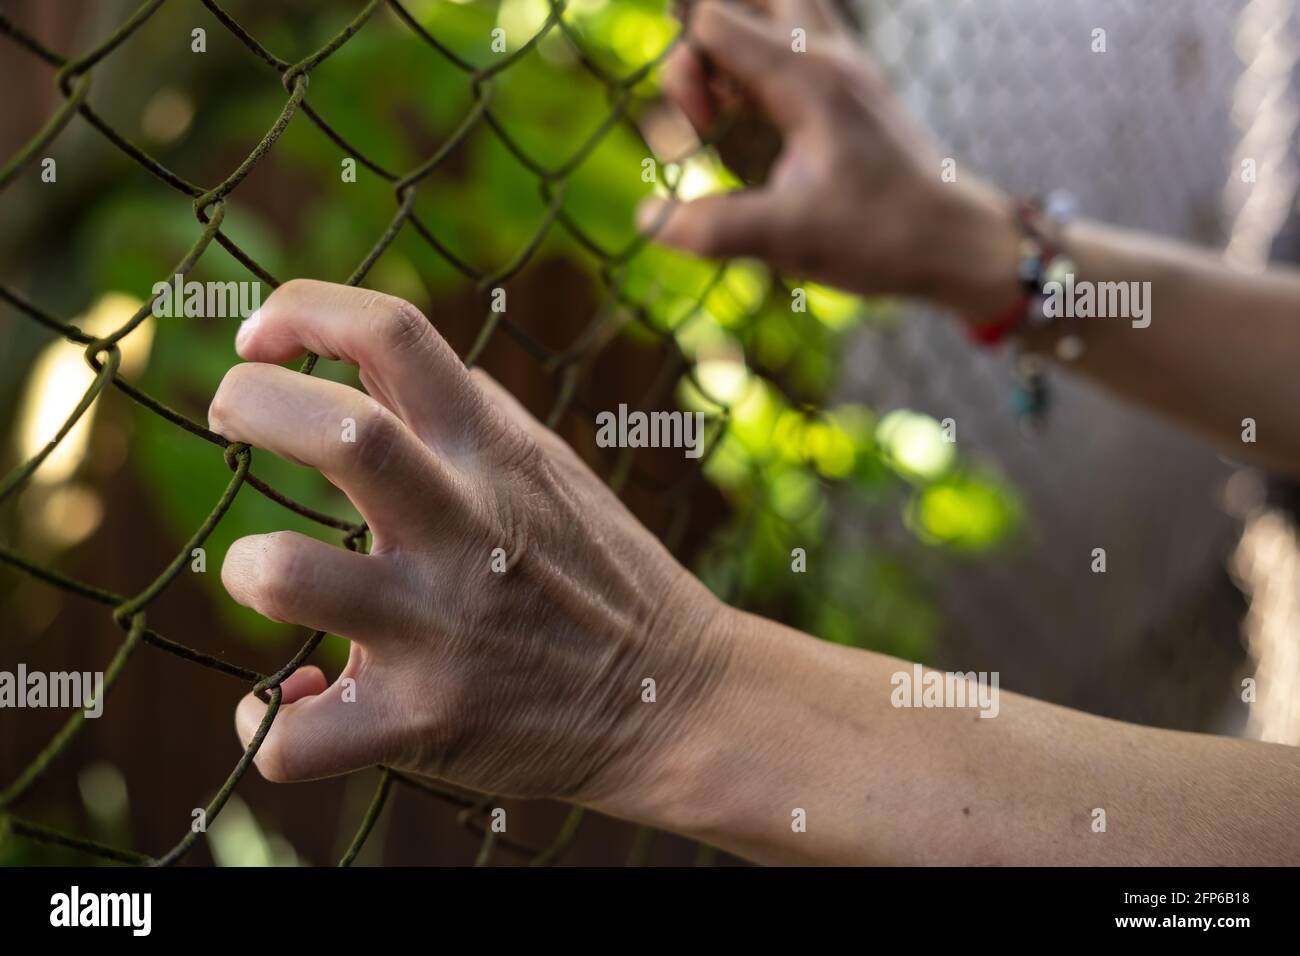 Les mains des femmes tensément et anxieusement se tiennent sur le maillage métallique de la clôture. Concept de stress et de liberté. Gros plan. Banque D'Images